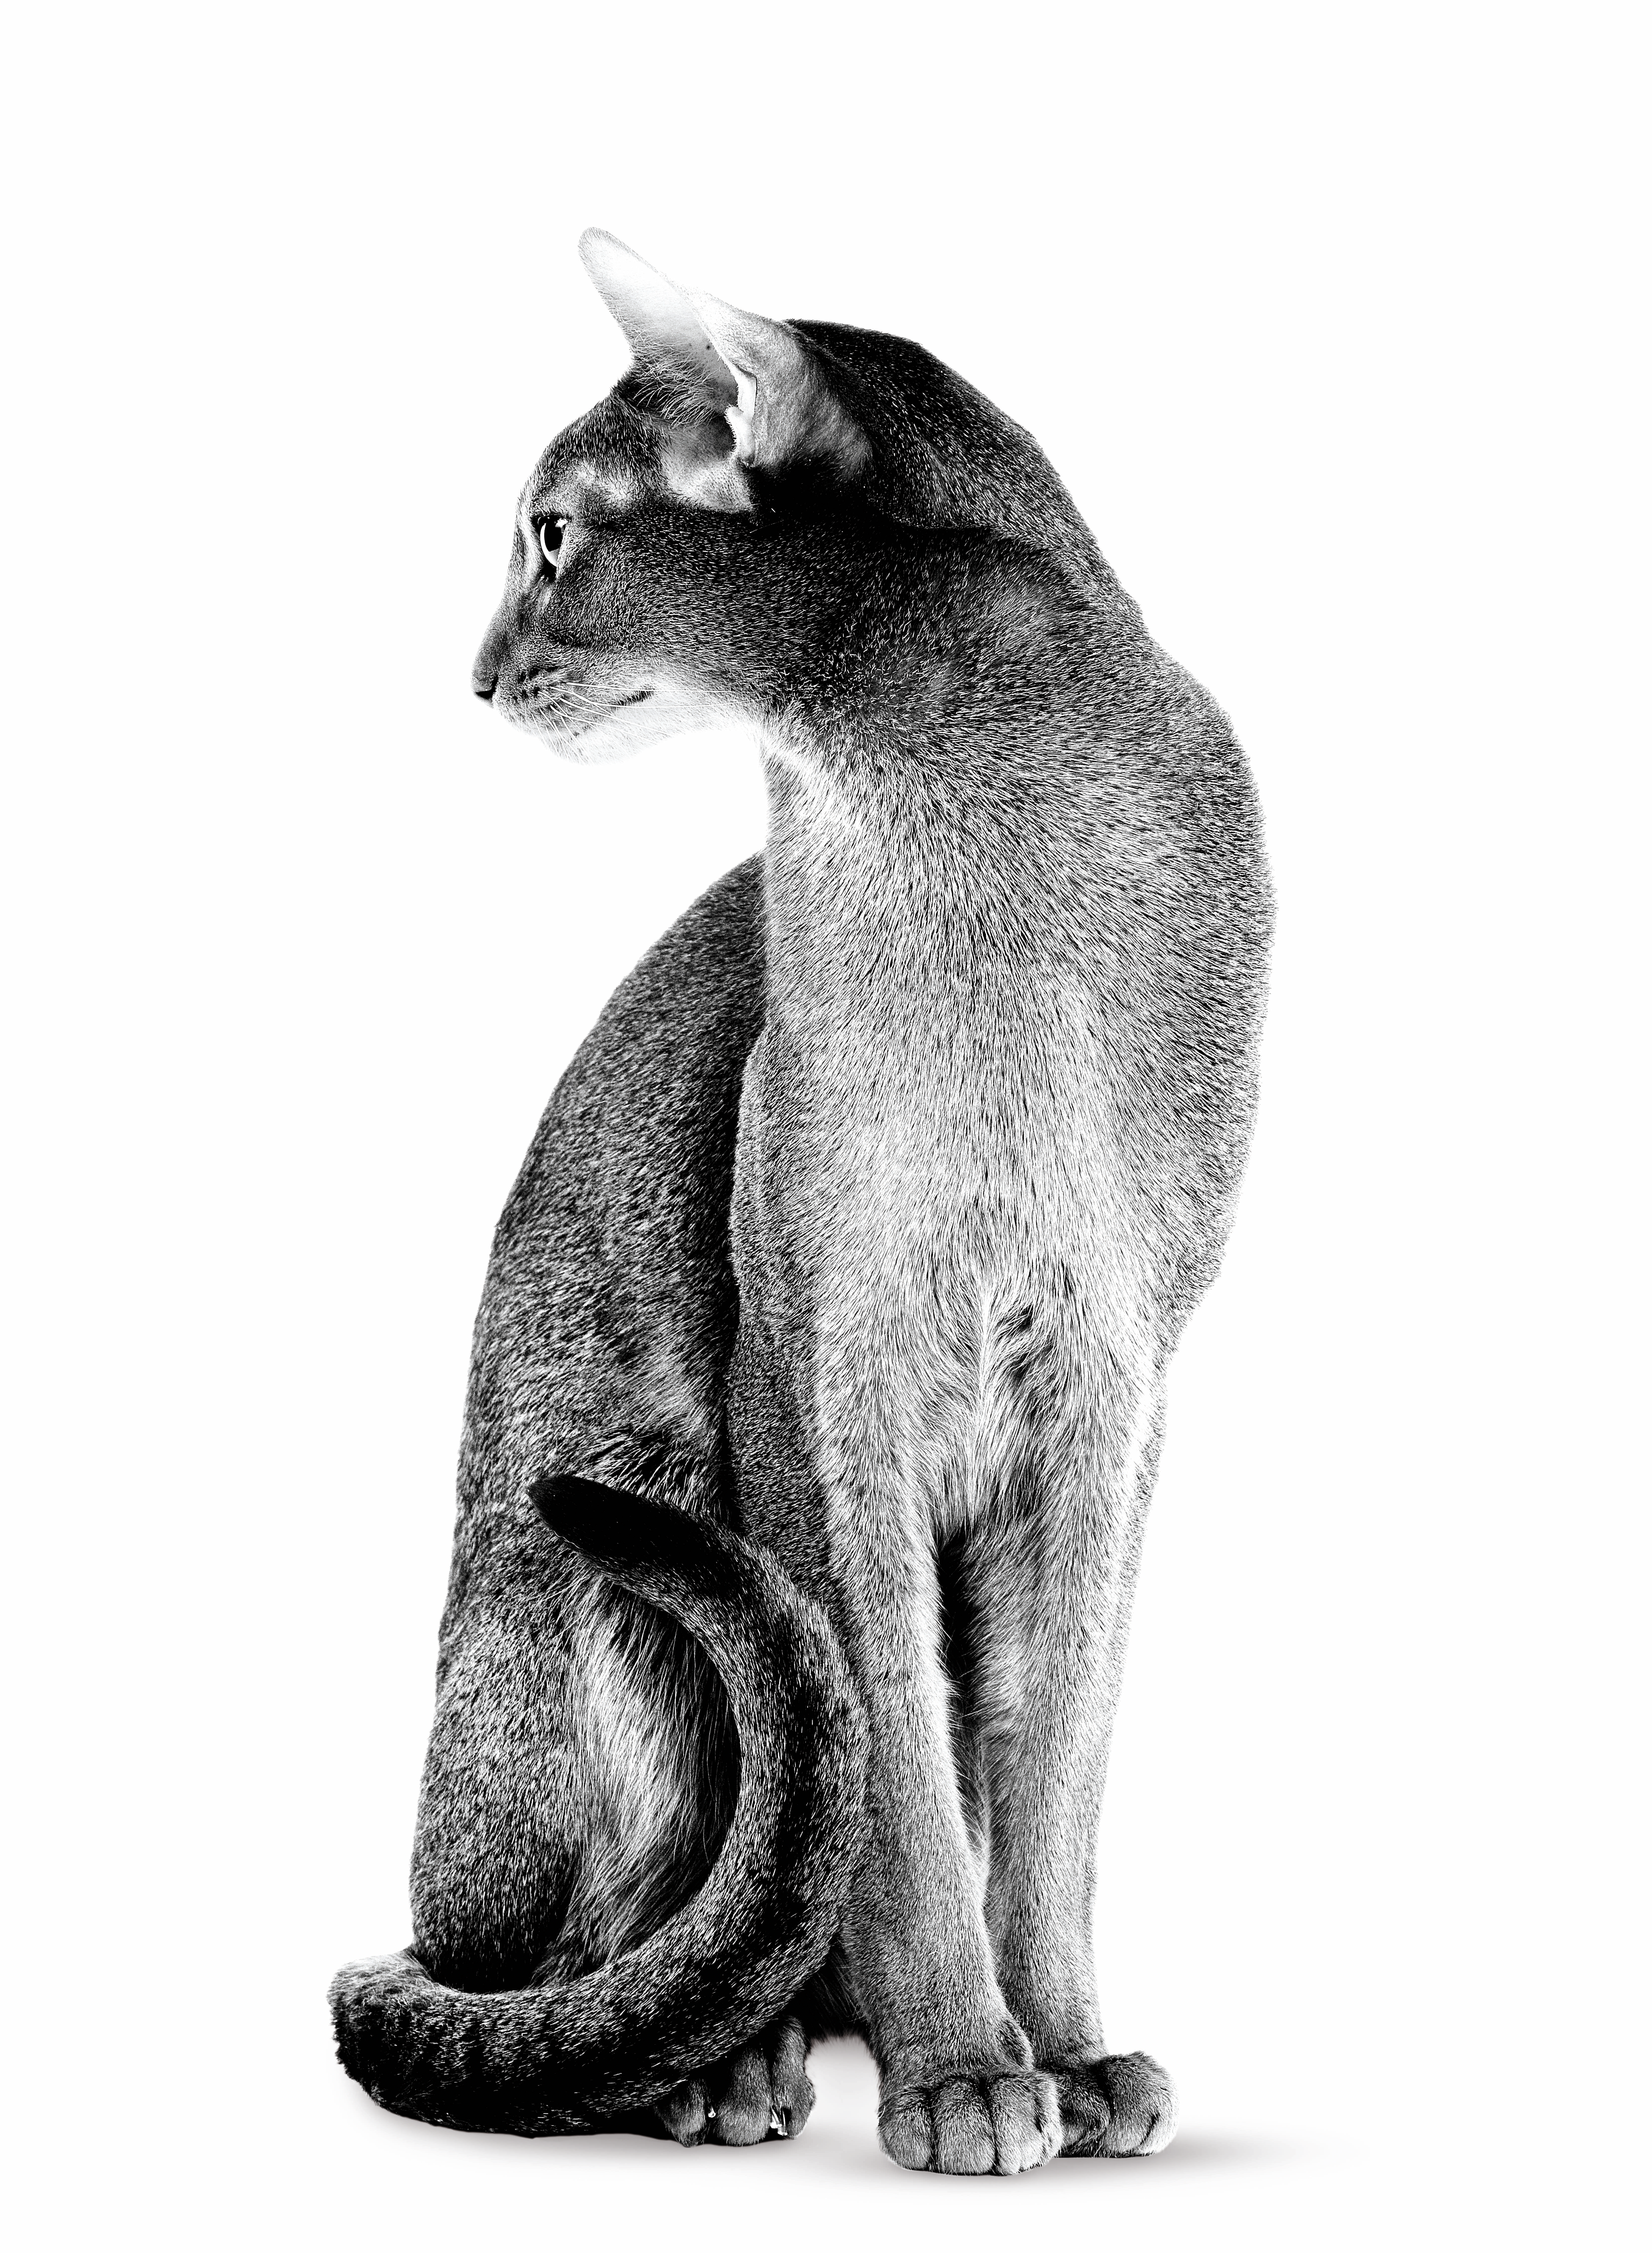 Ausgewachsene Abessinierkatze in Schwarzweiß vor weißem Hintergrund